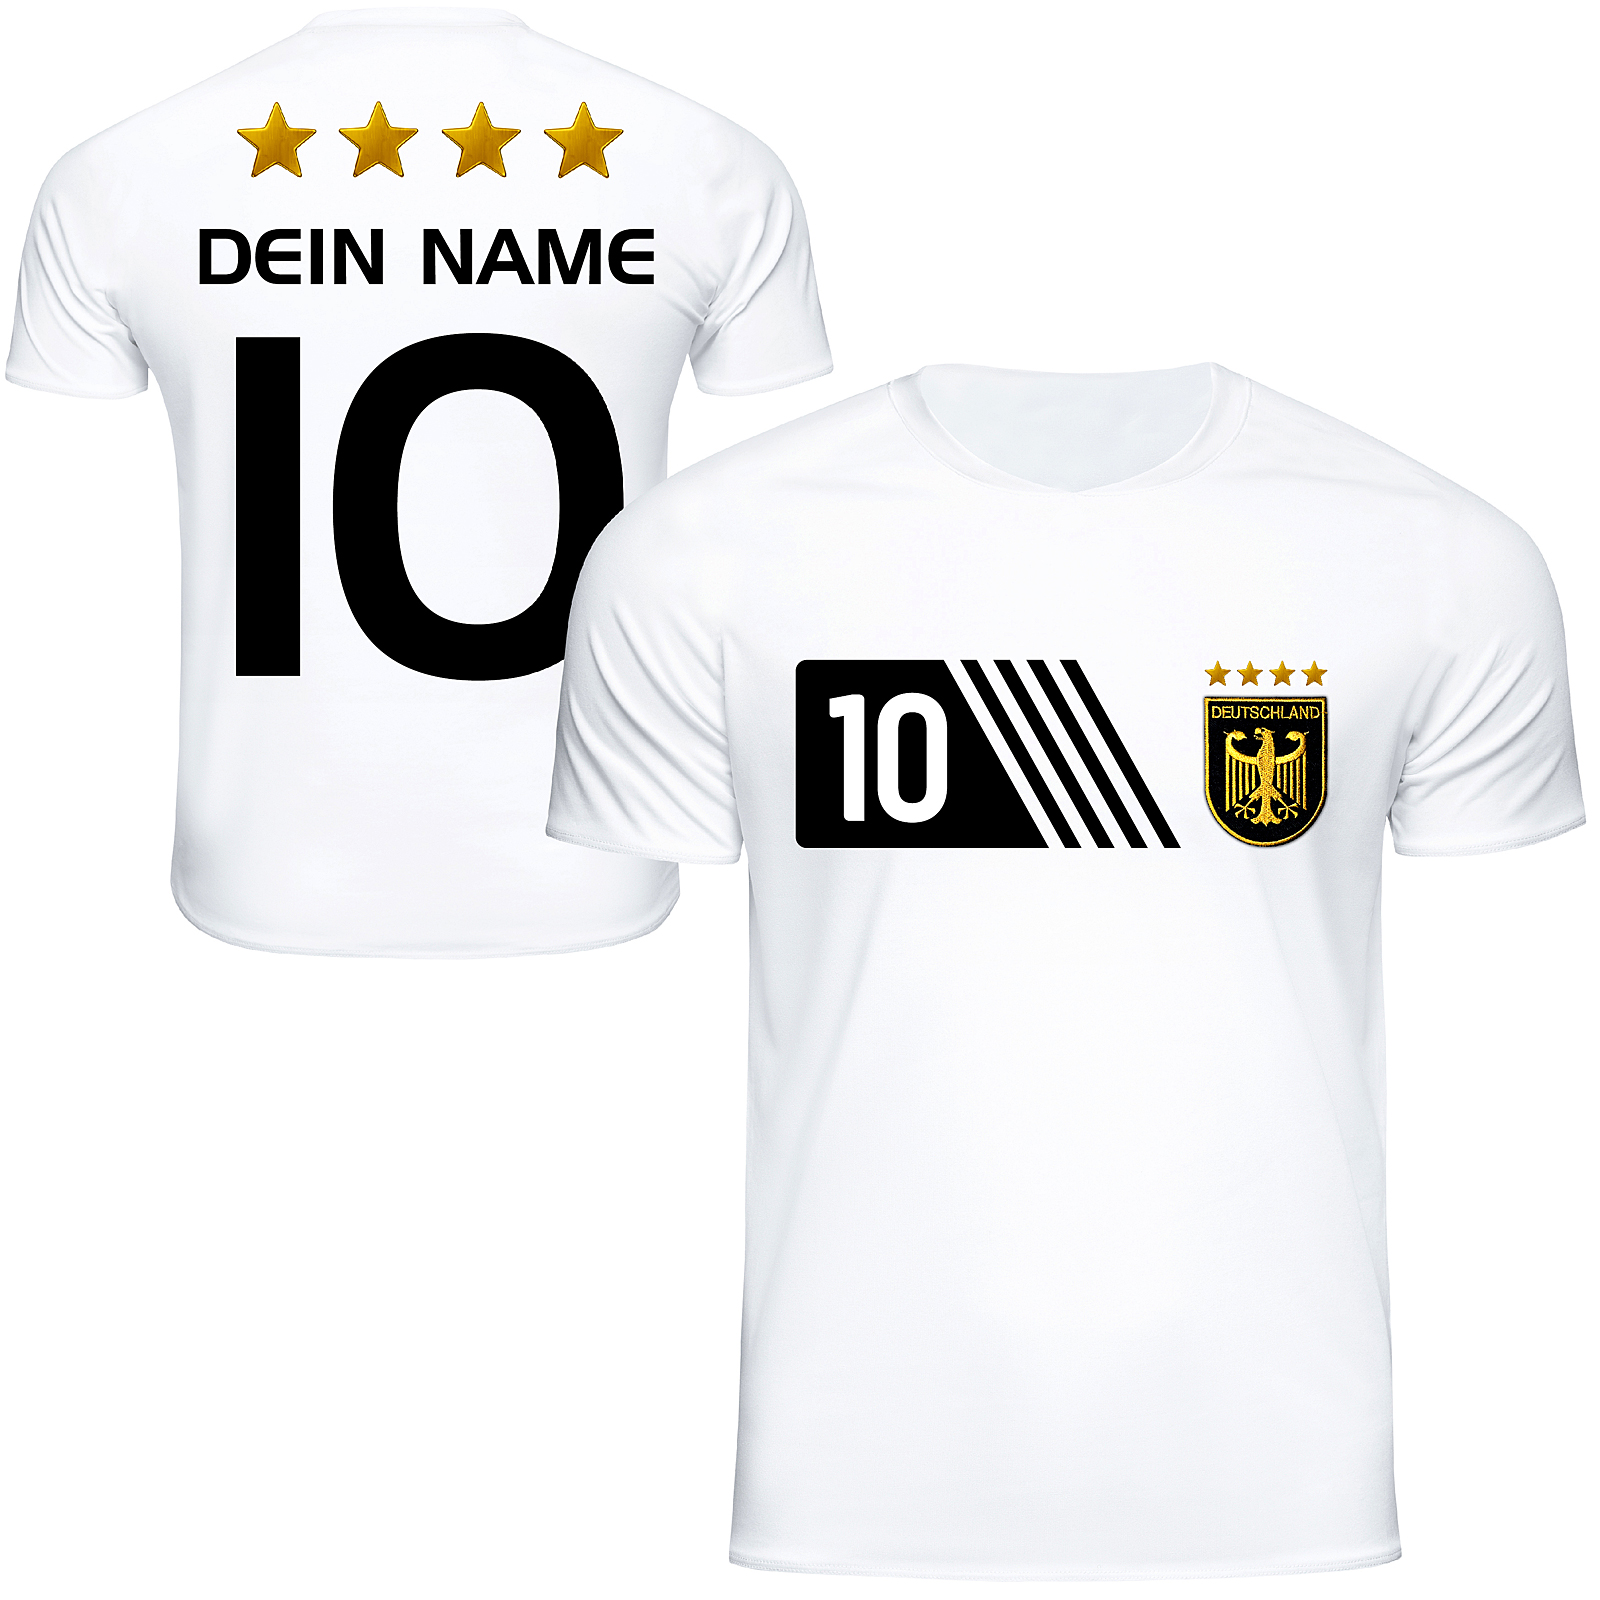 Kinder T-Shirt Fussballshirt Germany Deutschland mit Ihrem Wunschnamen bedruckt, 